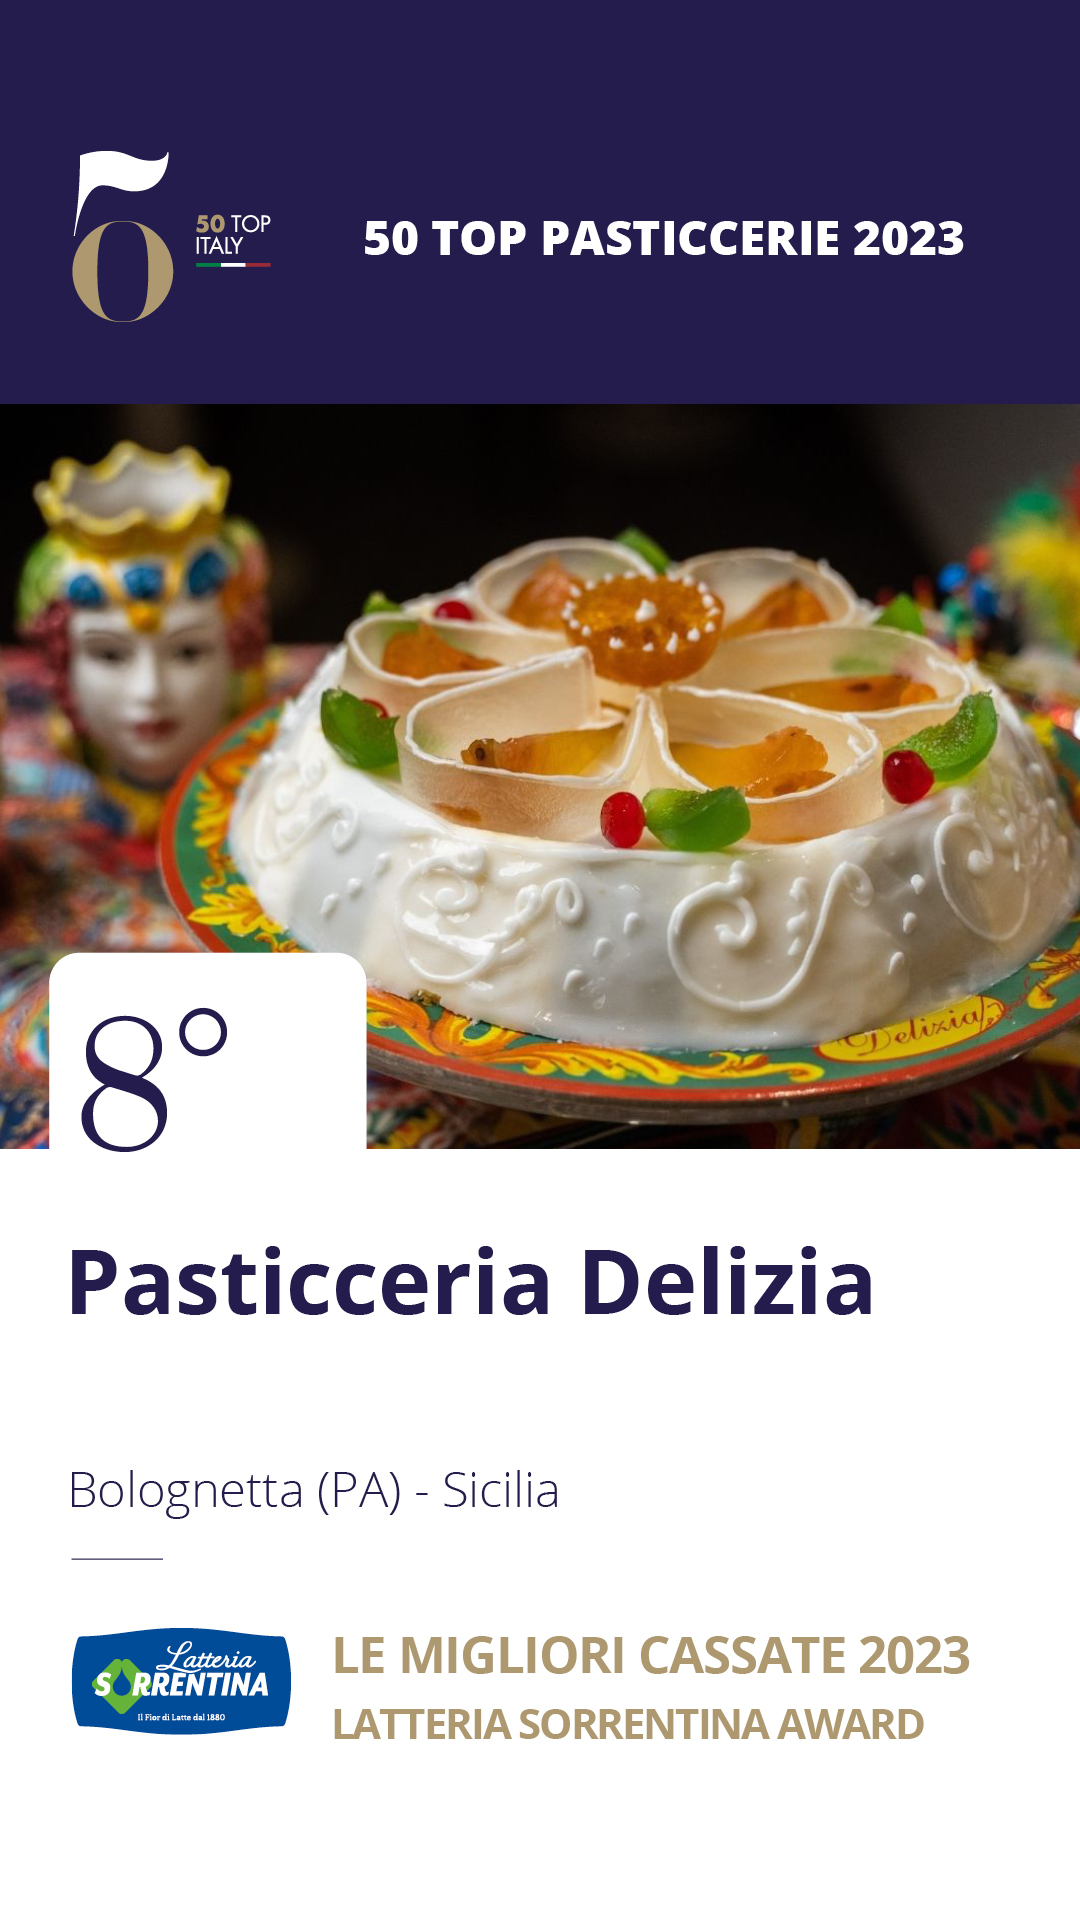 8 - Pasticceria Delizia - Bolognetta (PA), Sicilia